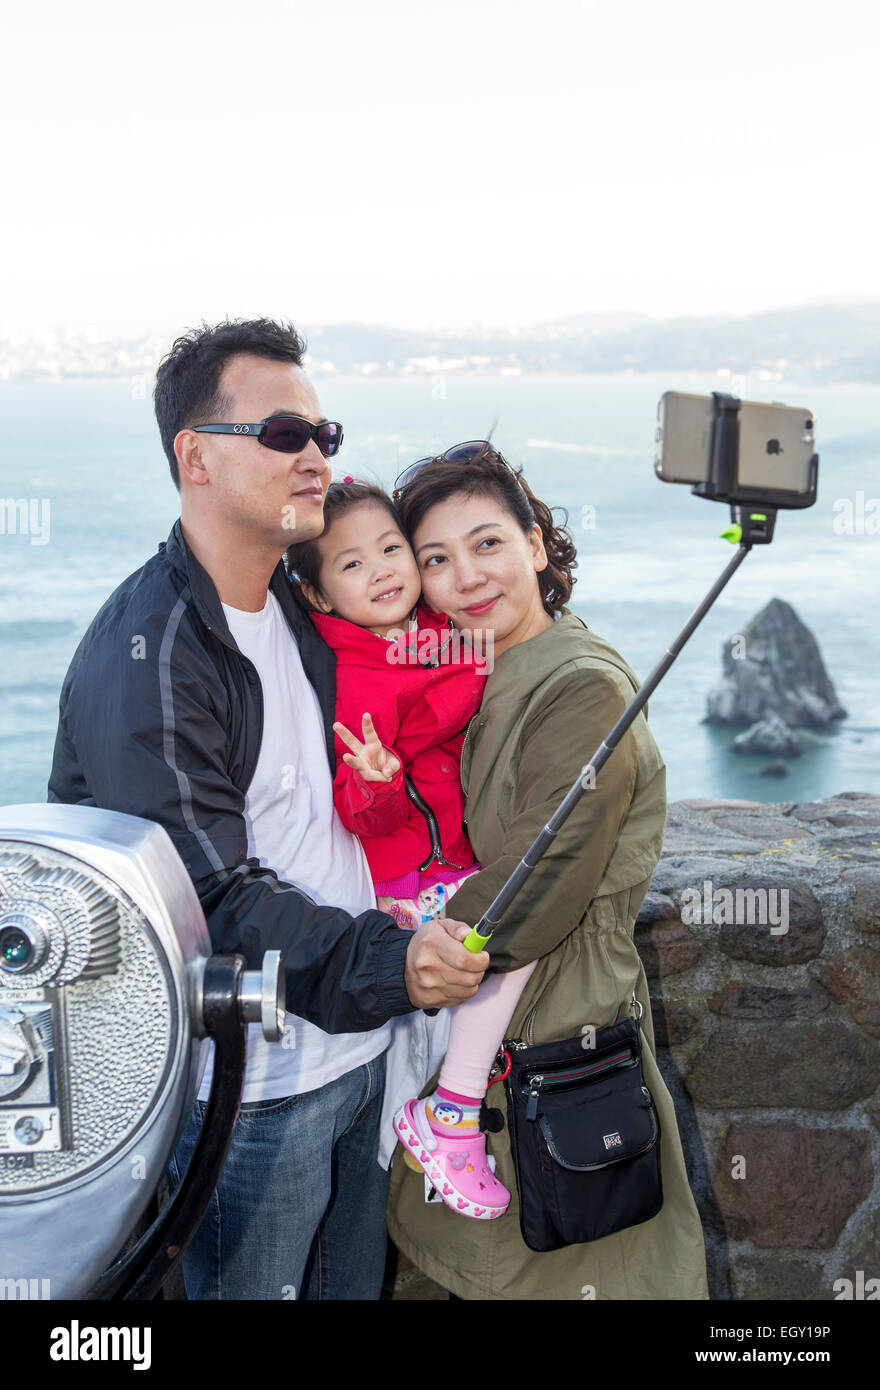 Touristen, Familien, unter Selfie, Selfie Foto, Selfie stick, Vista Point, nördlich der Golden Gate Bridge, Stadt Sausalito, Sausalito, Kalifornien Stockfoto